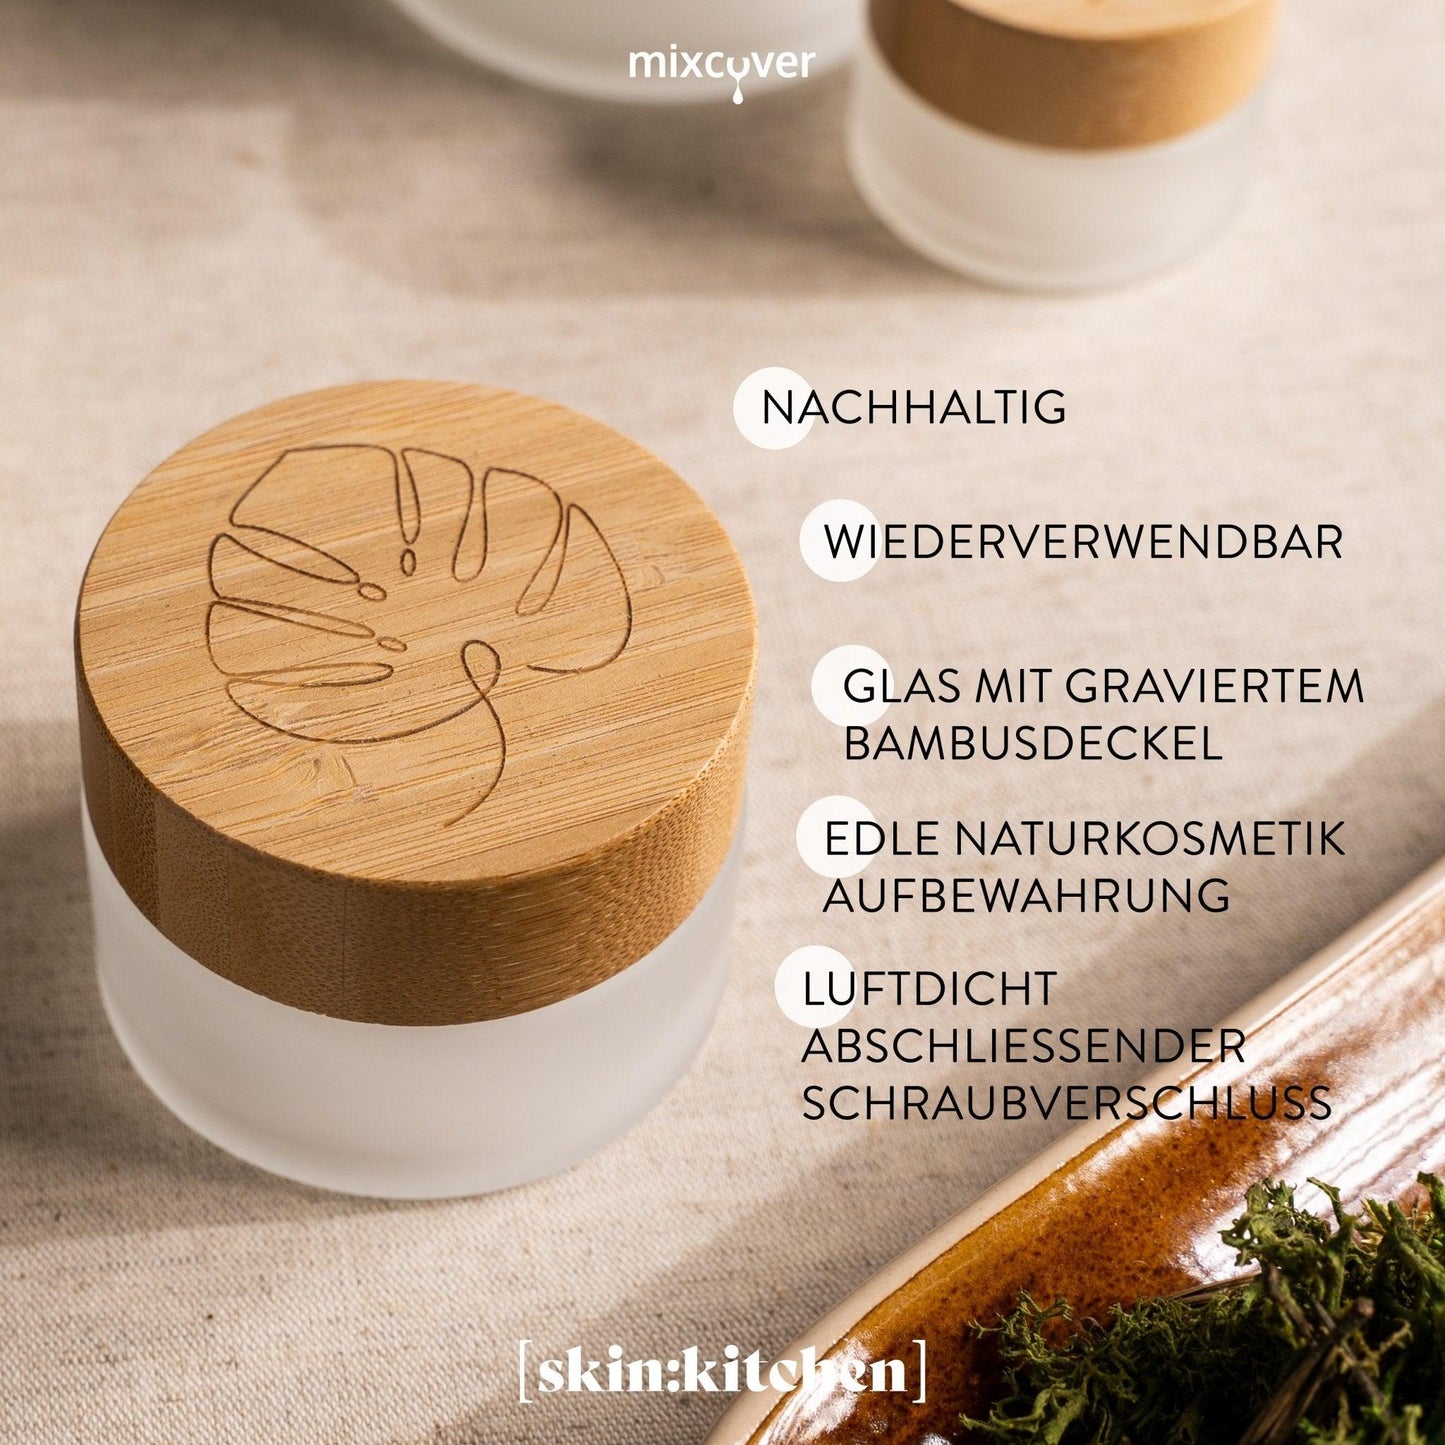 skinkitchen Glastiegel mit Bambusdeckel & Gravur für selbstgemachte Kosmetik 3er Set 20, 50 & 100g "Frosted" - Mixcover - skin:kitchen